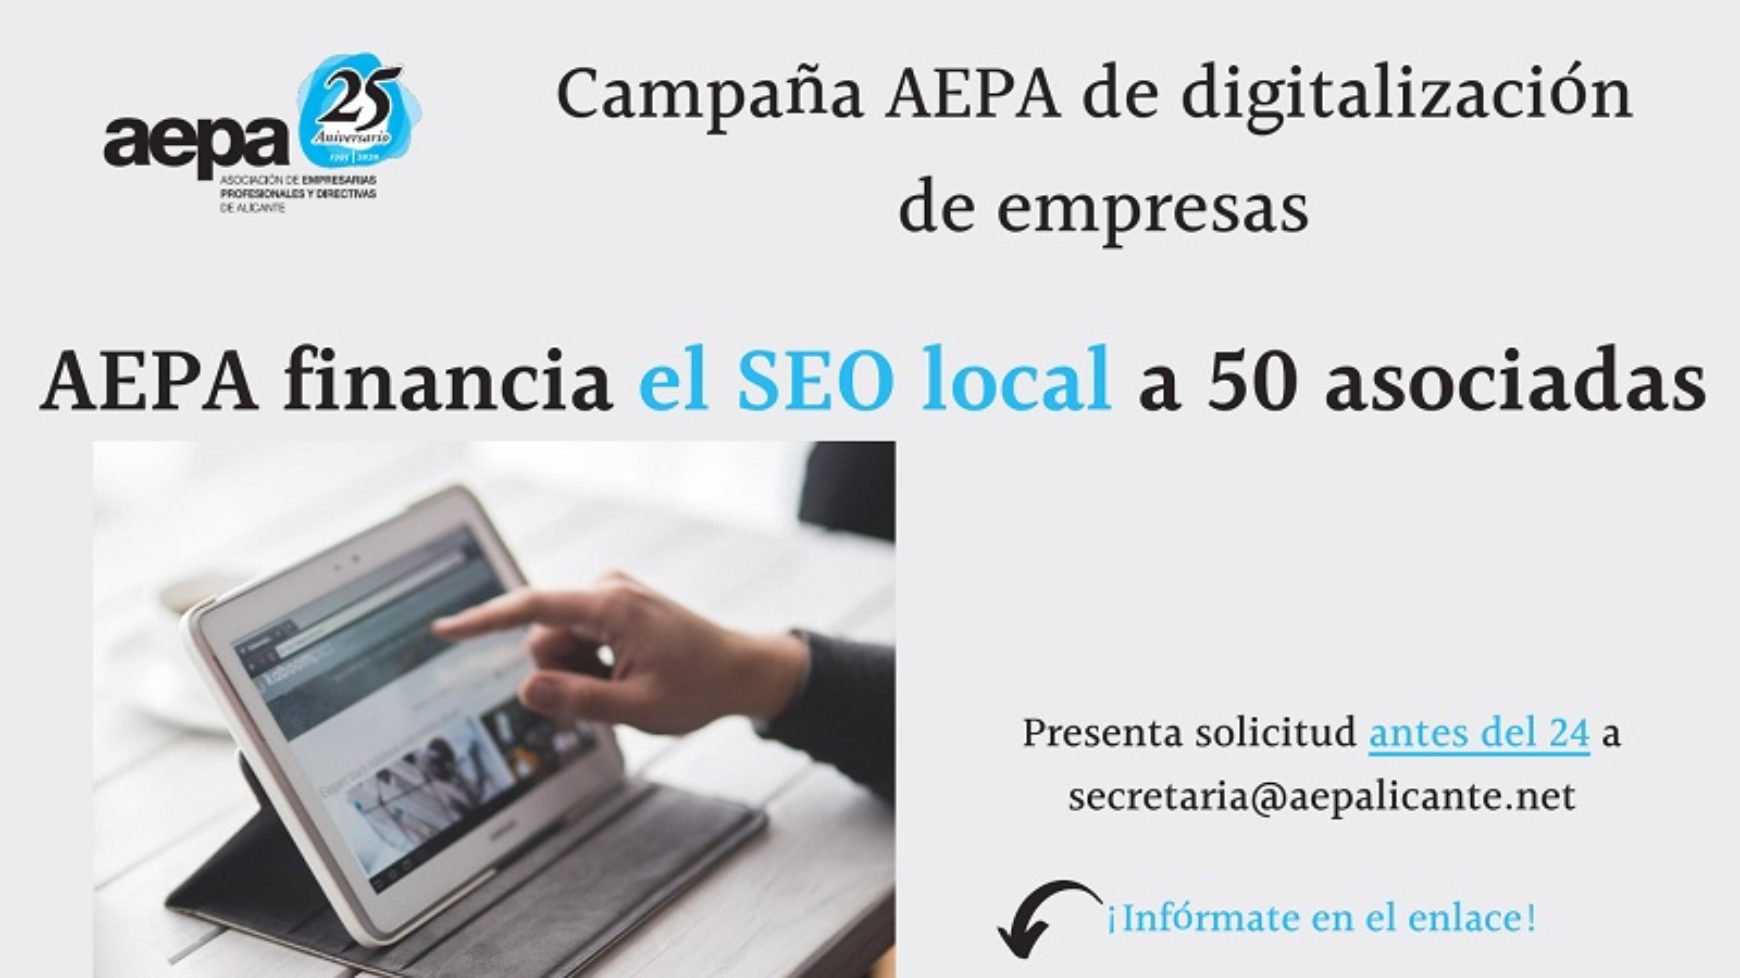 Campaña AEPA digitalización de empresas y profesionales asociadas